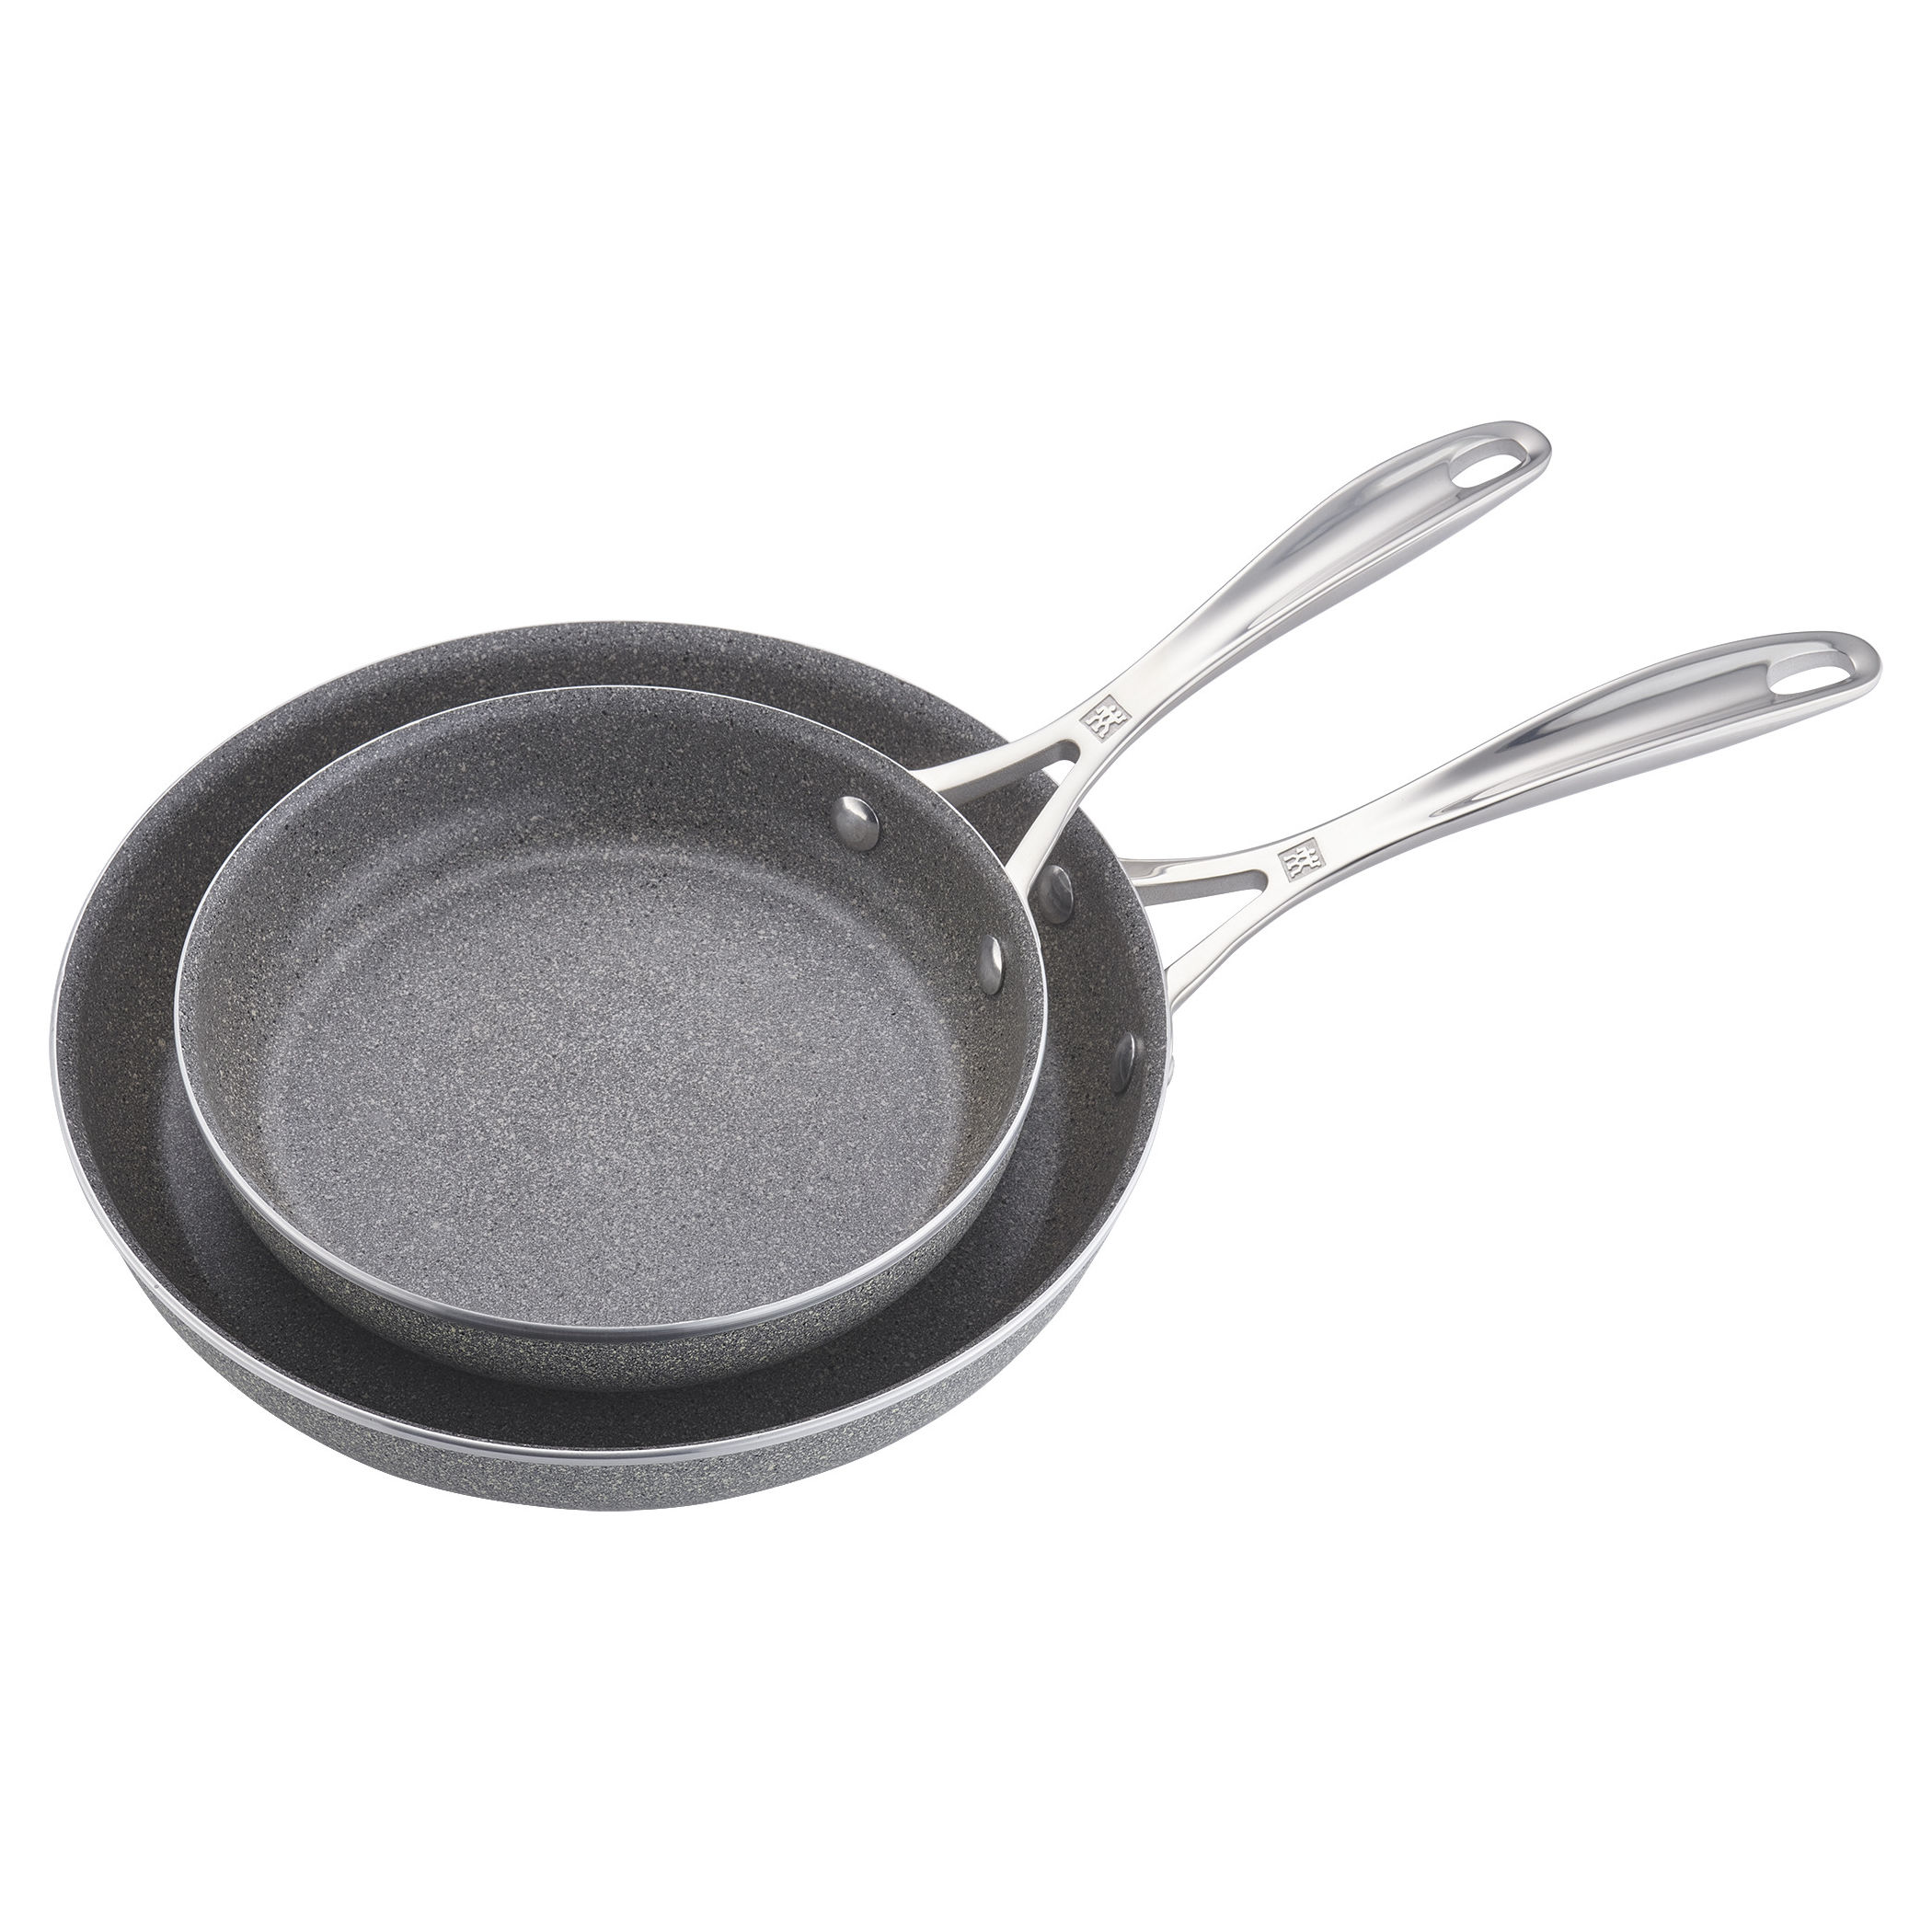 Non-stick frying pan, two-sided pan, golden folding frying pan - AliExpress